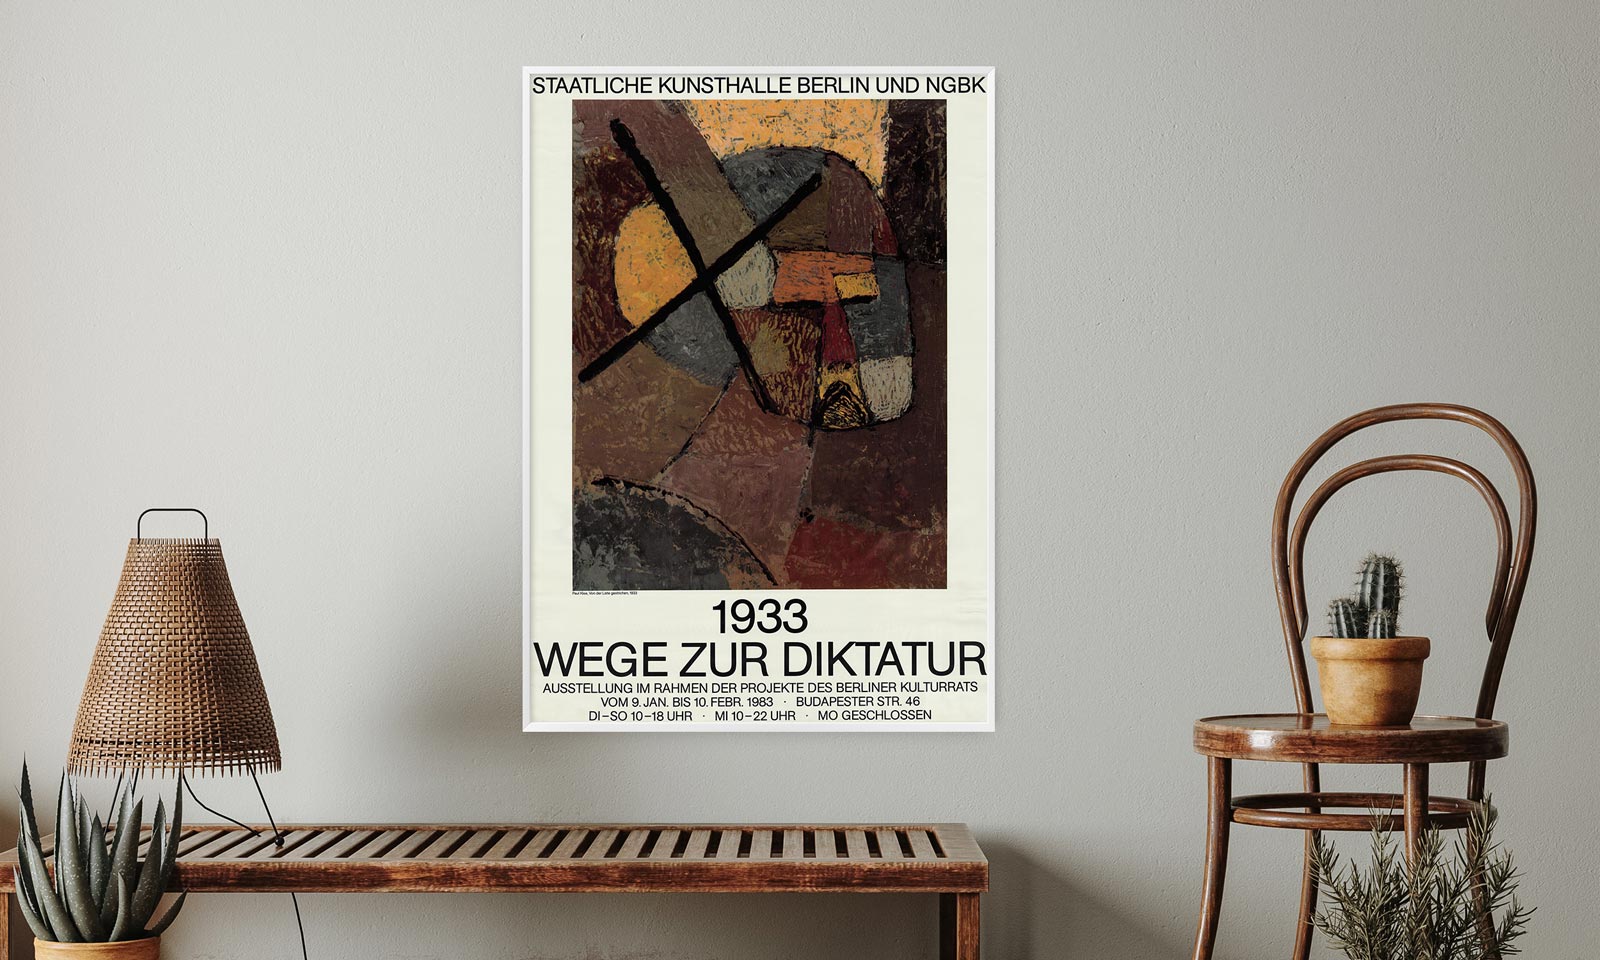 1933 - Wege zur Diktatur, Staatliche Kunsthalle Berlin, 1983